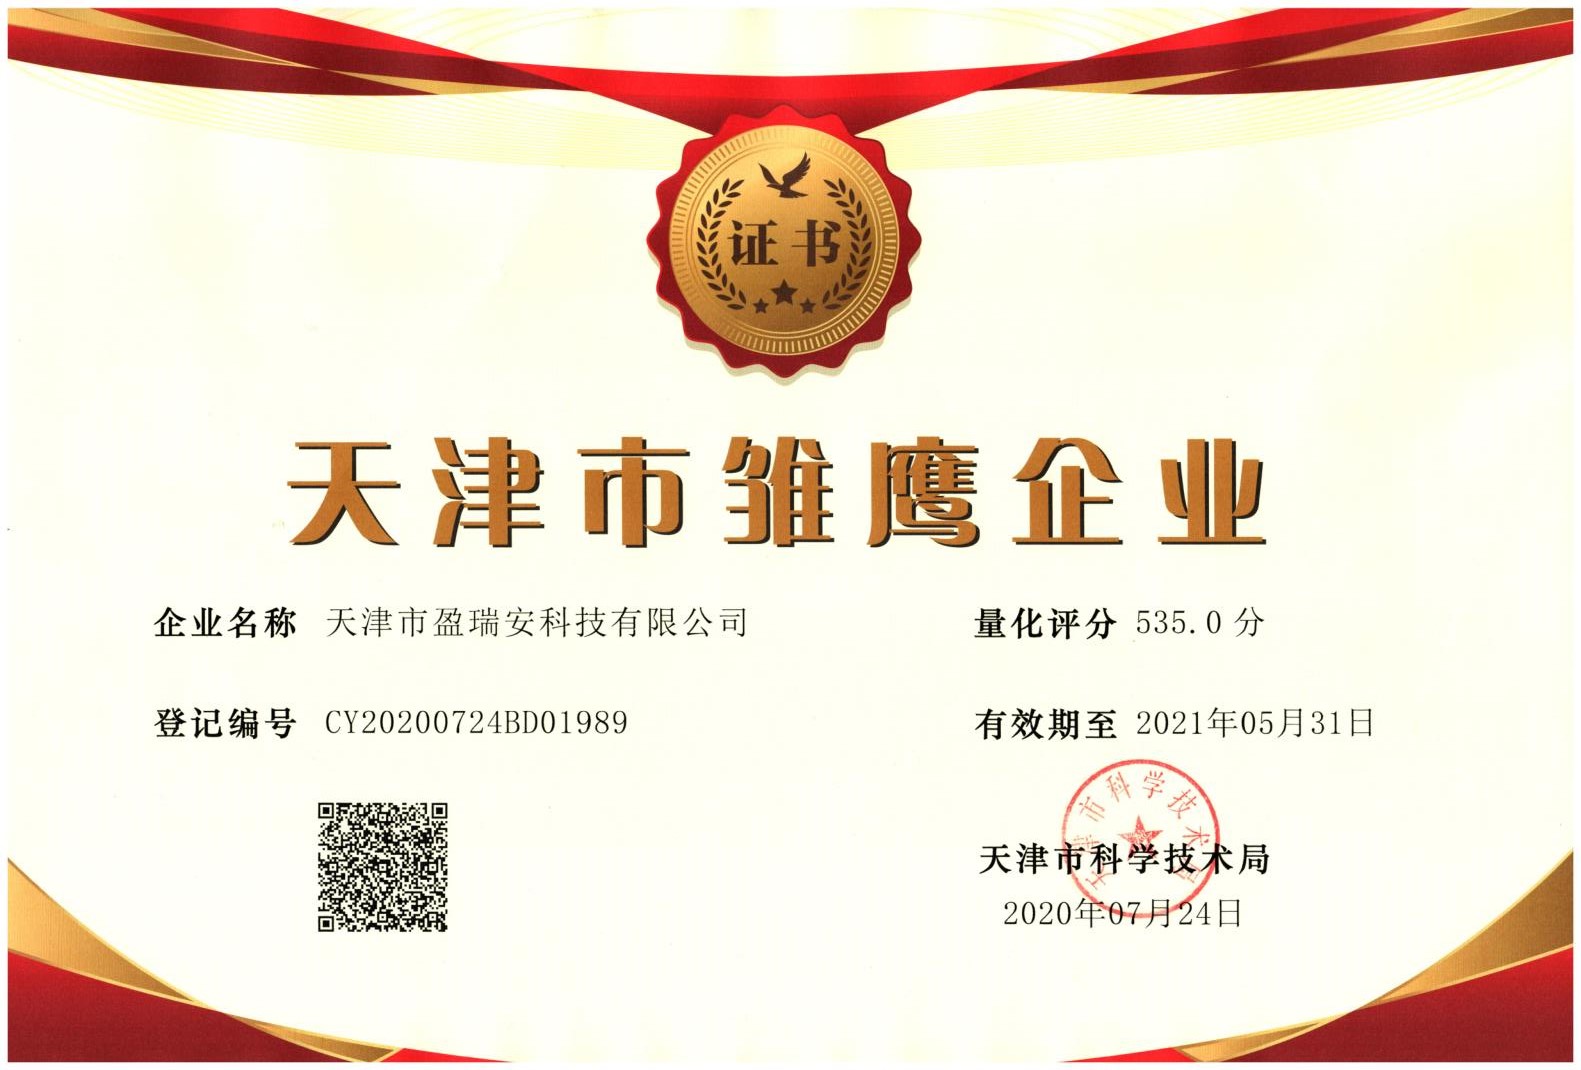 祝贺天津市盈瑞安科技有限公司被天津市科学技术局评为“天津市雏鹰企业”称号